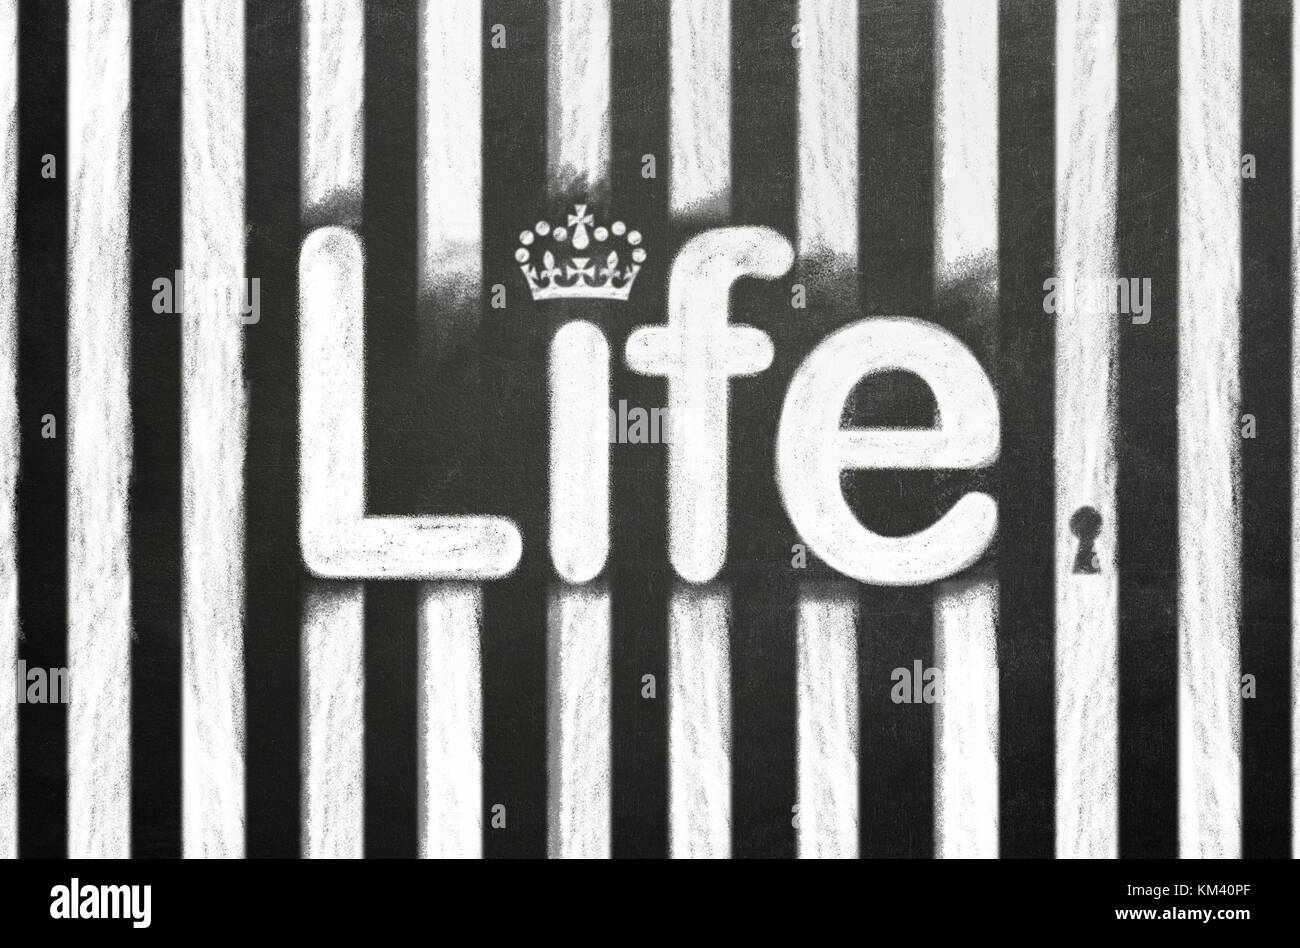 Prison à perpétuité concept. Le mot avec lfe cell bars tracé à la craie sur un tableau noir. Banque D'Images